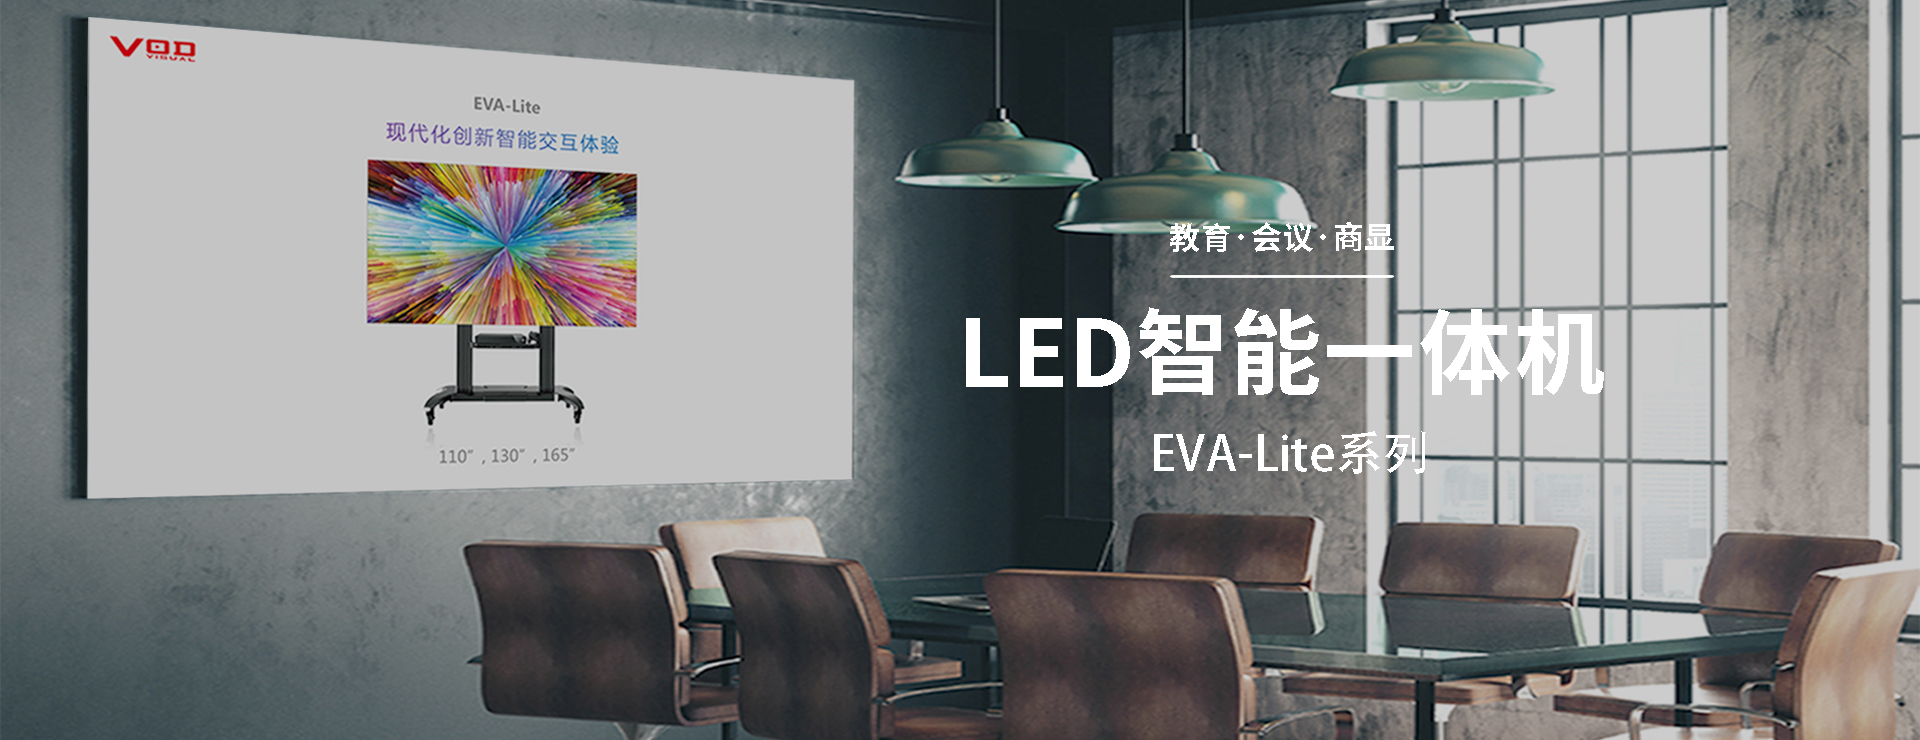 LED EVA-LITE